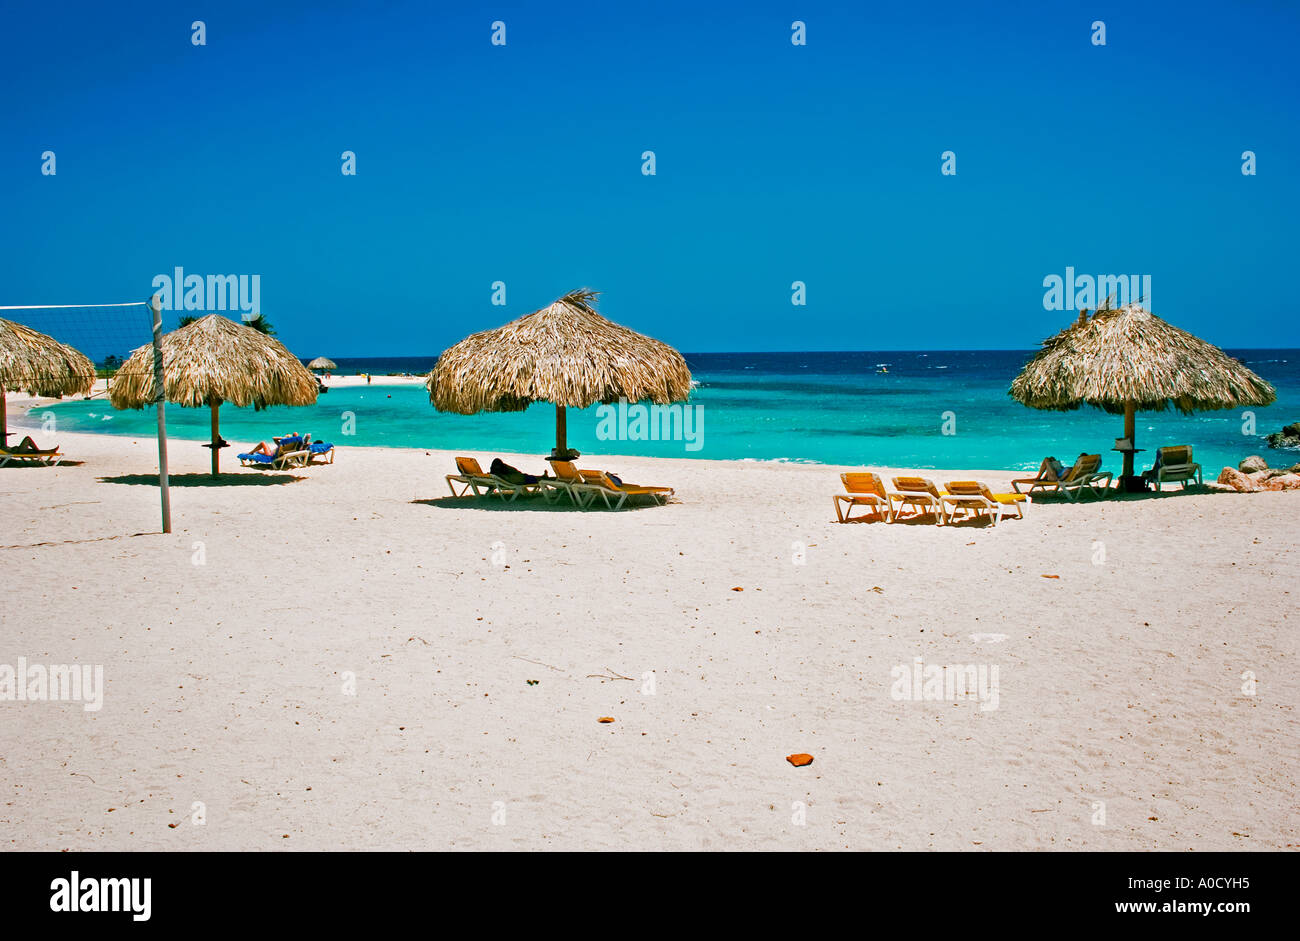 Piscadera Bay Beach Curaçao Antille olandesi Foto Stock